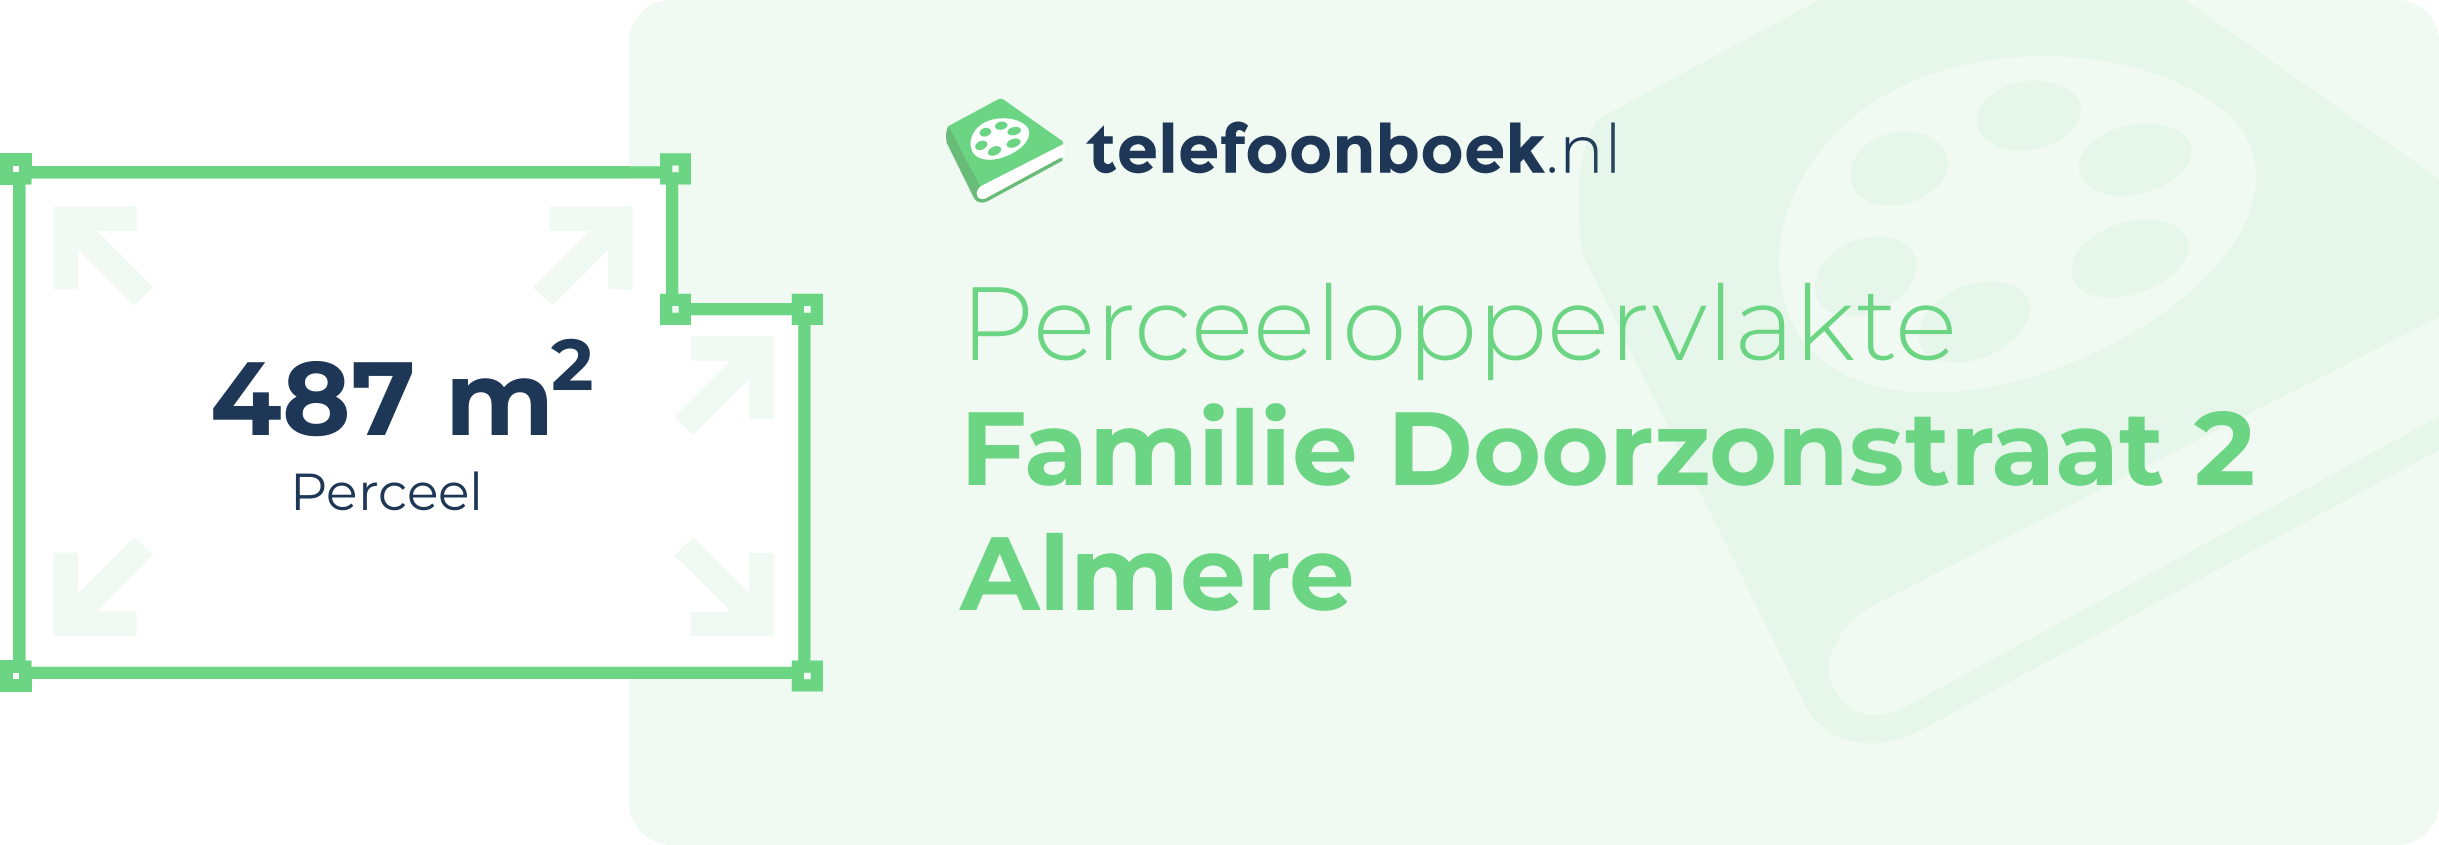 Perceeloppervlakte Familie Doorzonstraat 2 Almere